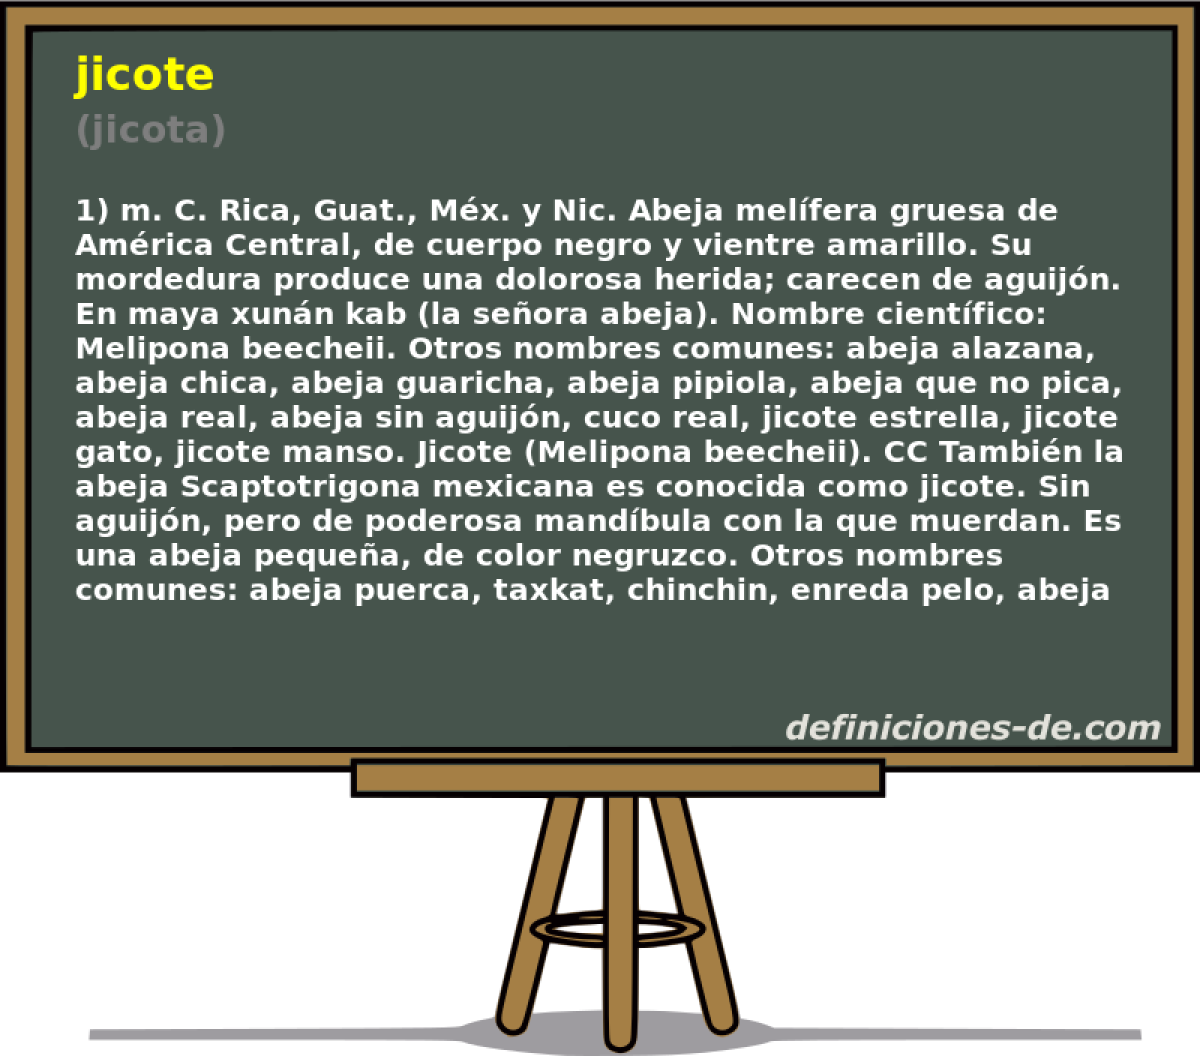 jicote (jicota)